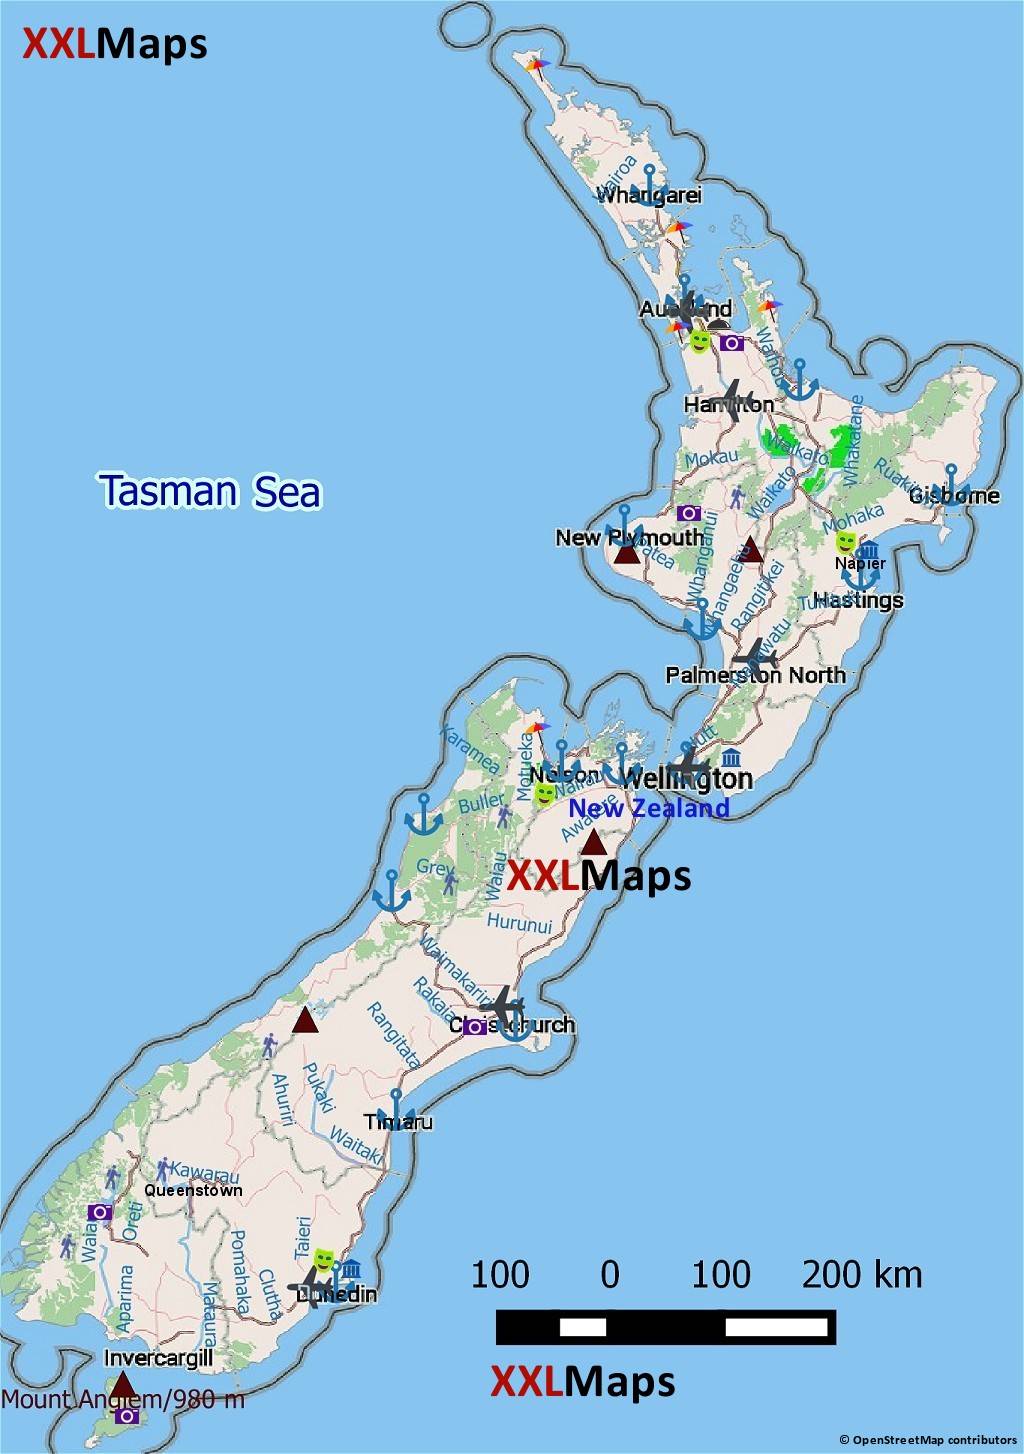 Mapa turístico de Nova Zelândia